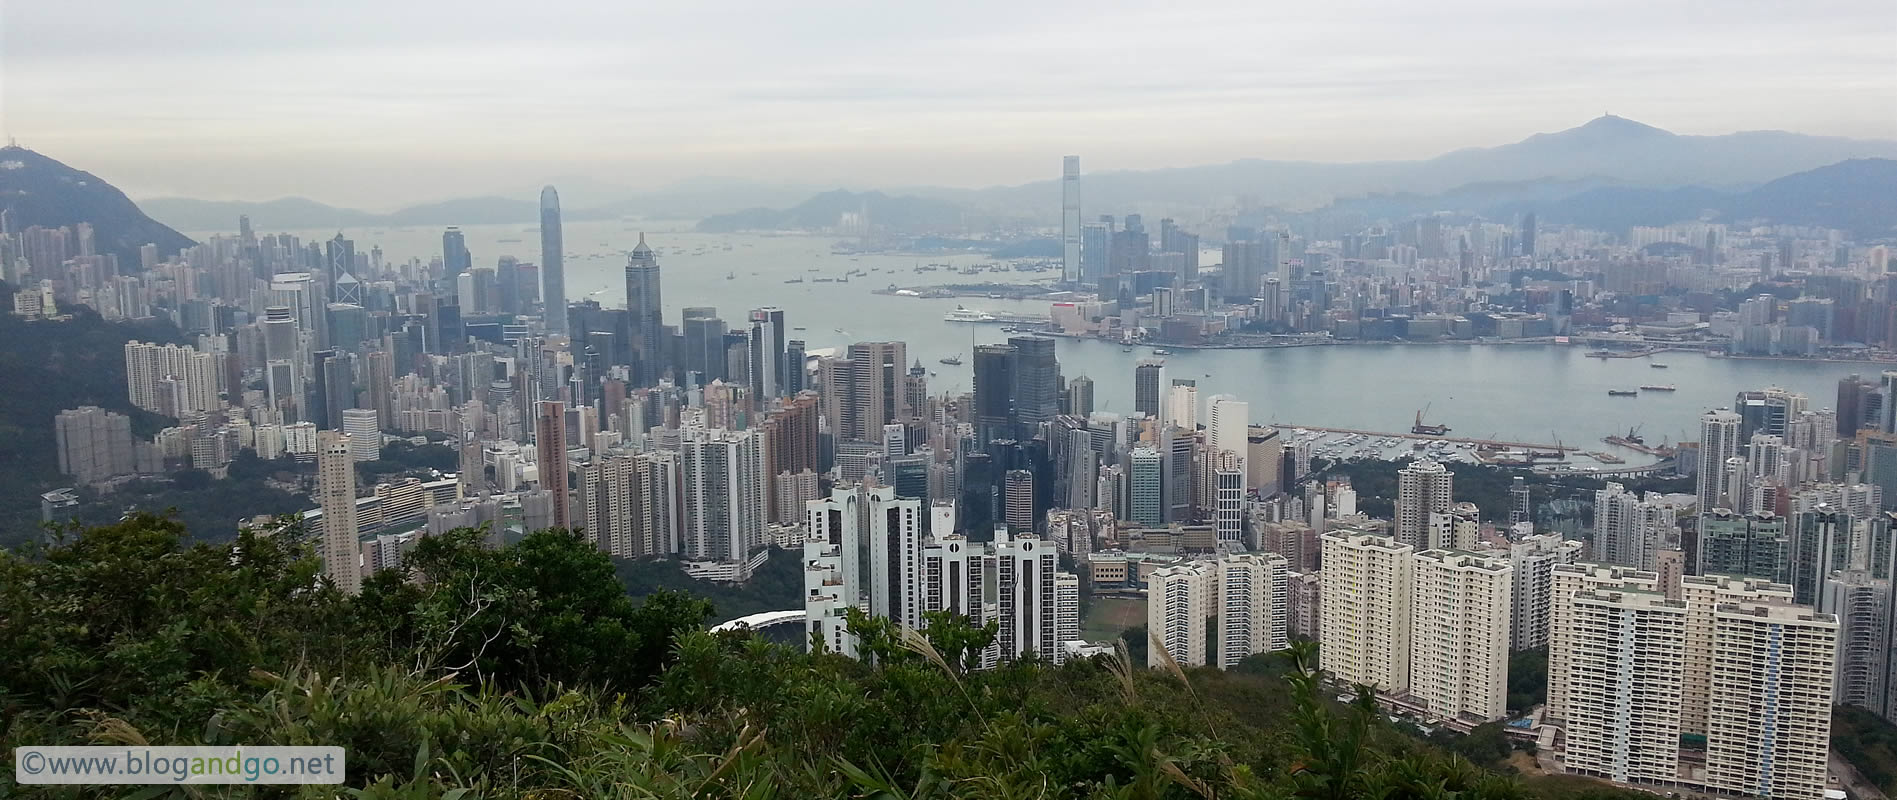 Hikes - Hong Kong Trail